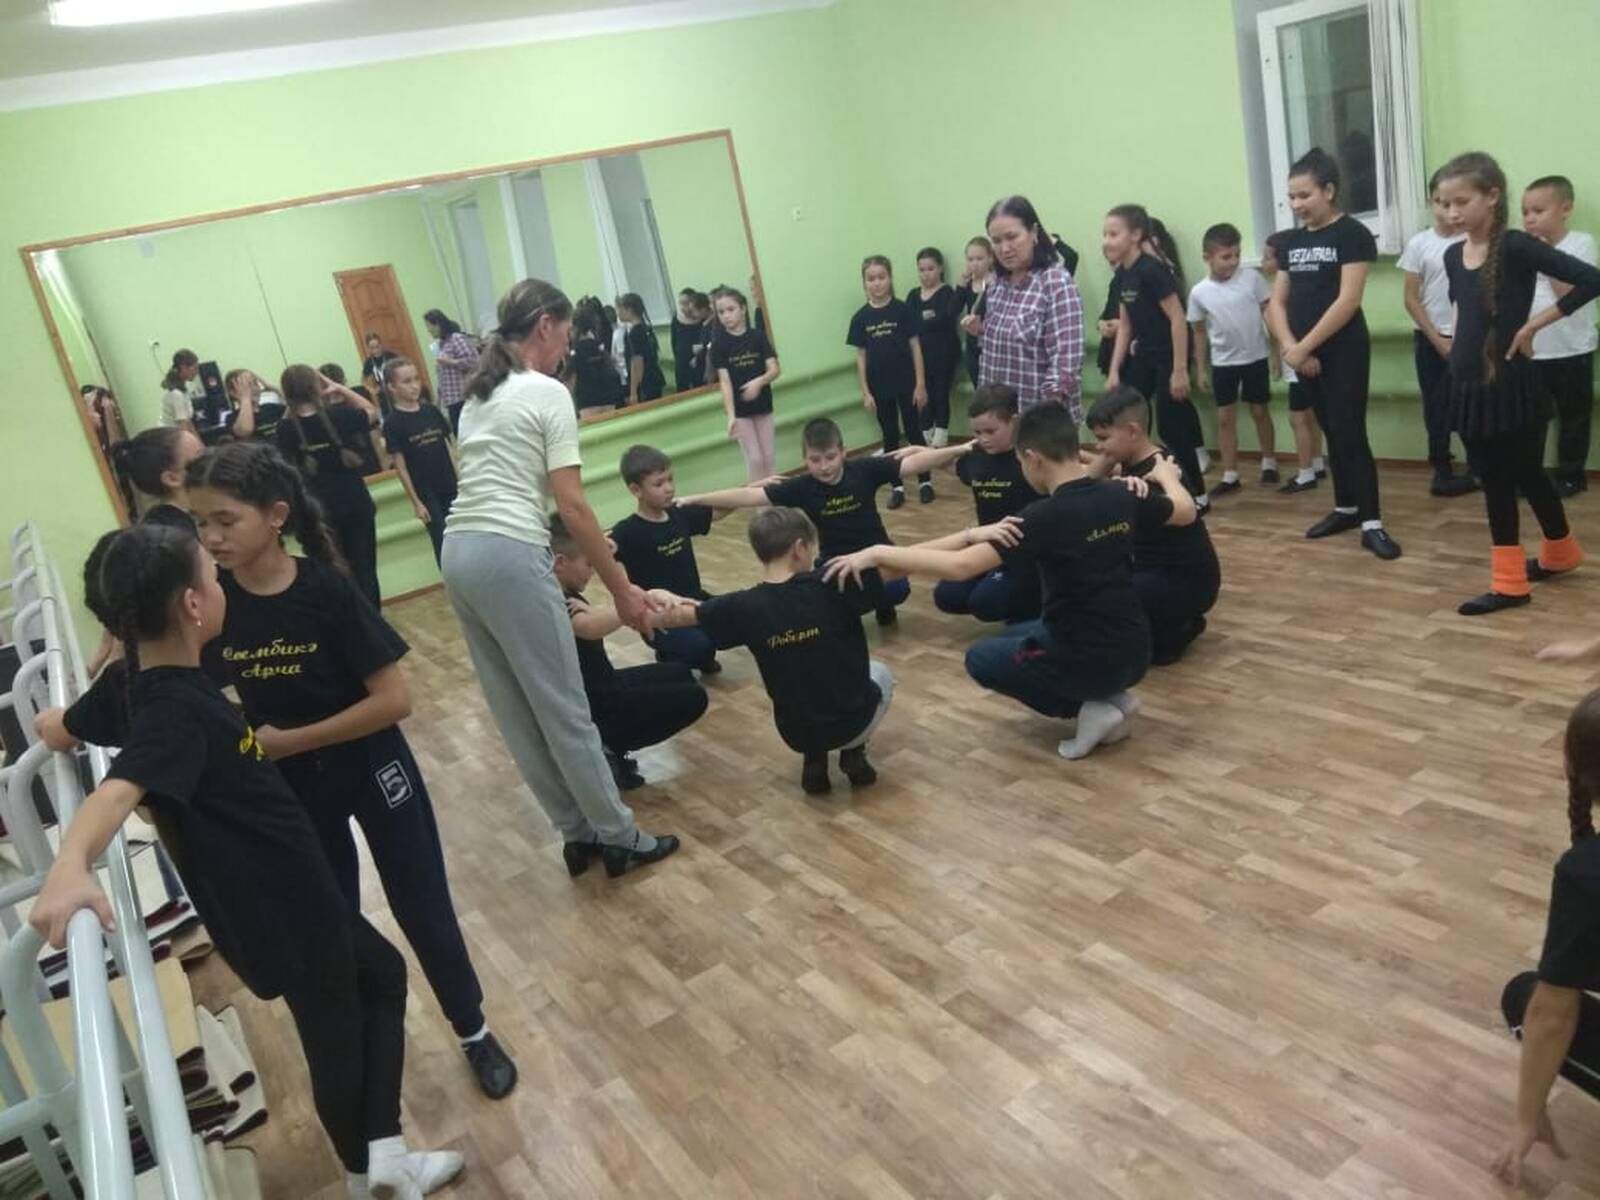 Саба балалар сәнгать мәктәбенең хореография бүлеге укытучысы Мөбәрәкҗанова А.З. Арчада мастер-класс үткәрде